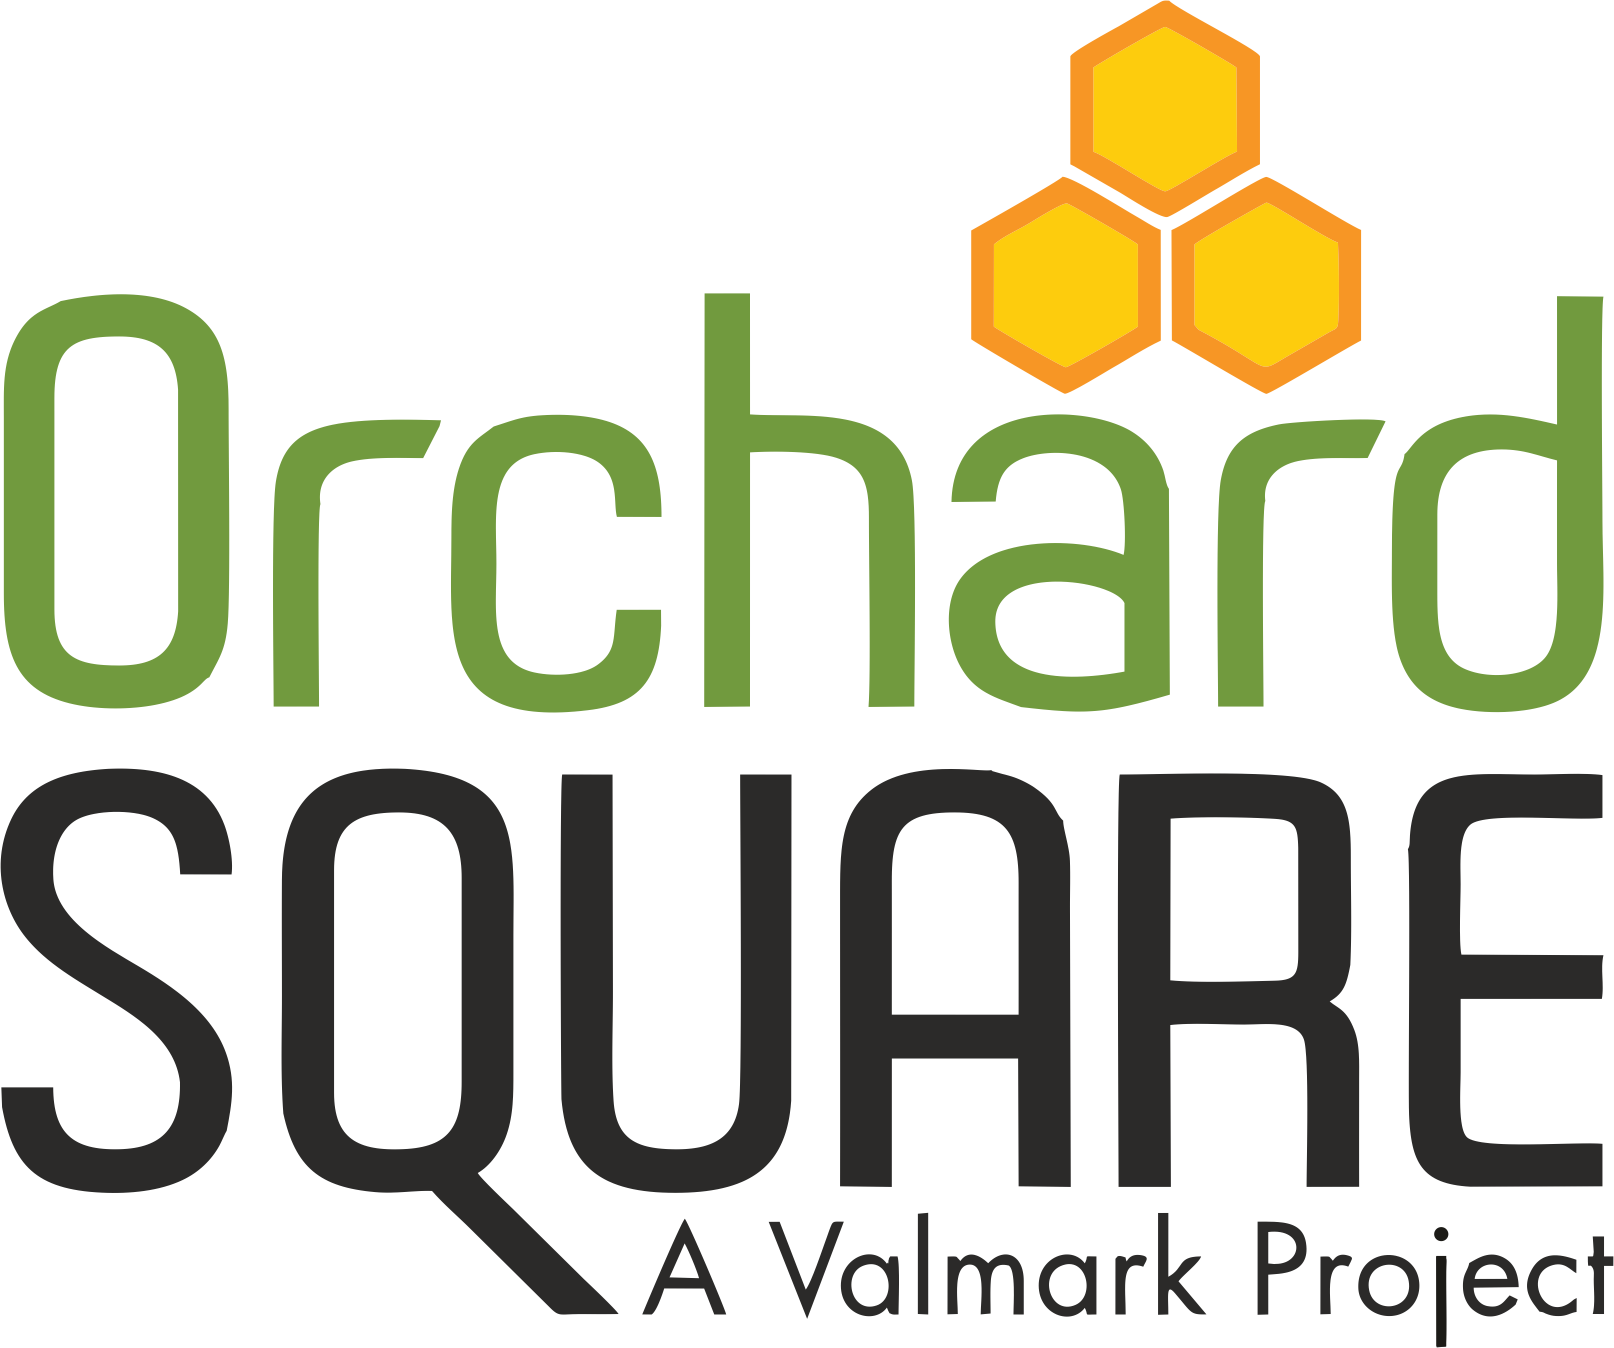 Valmark Orchard square